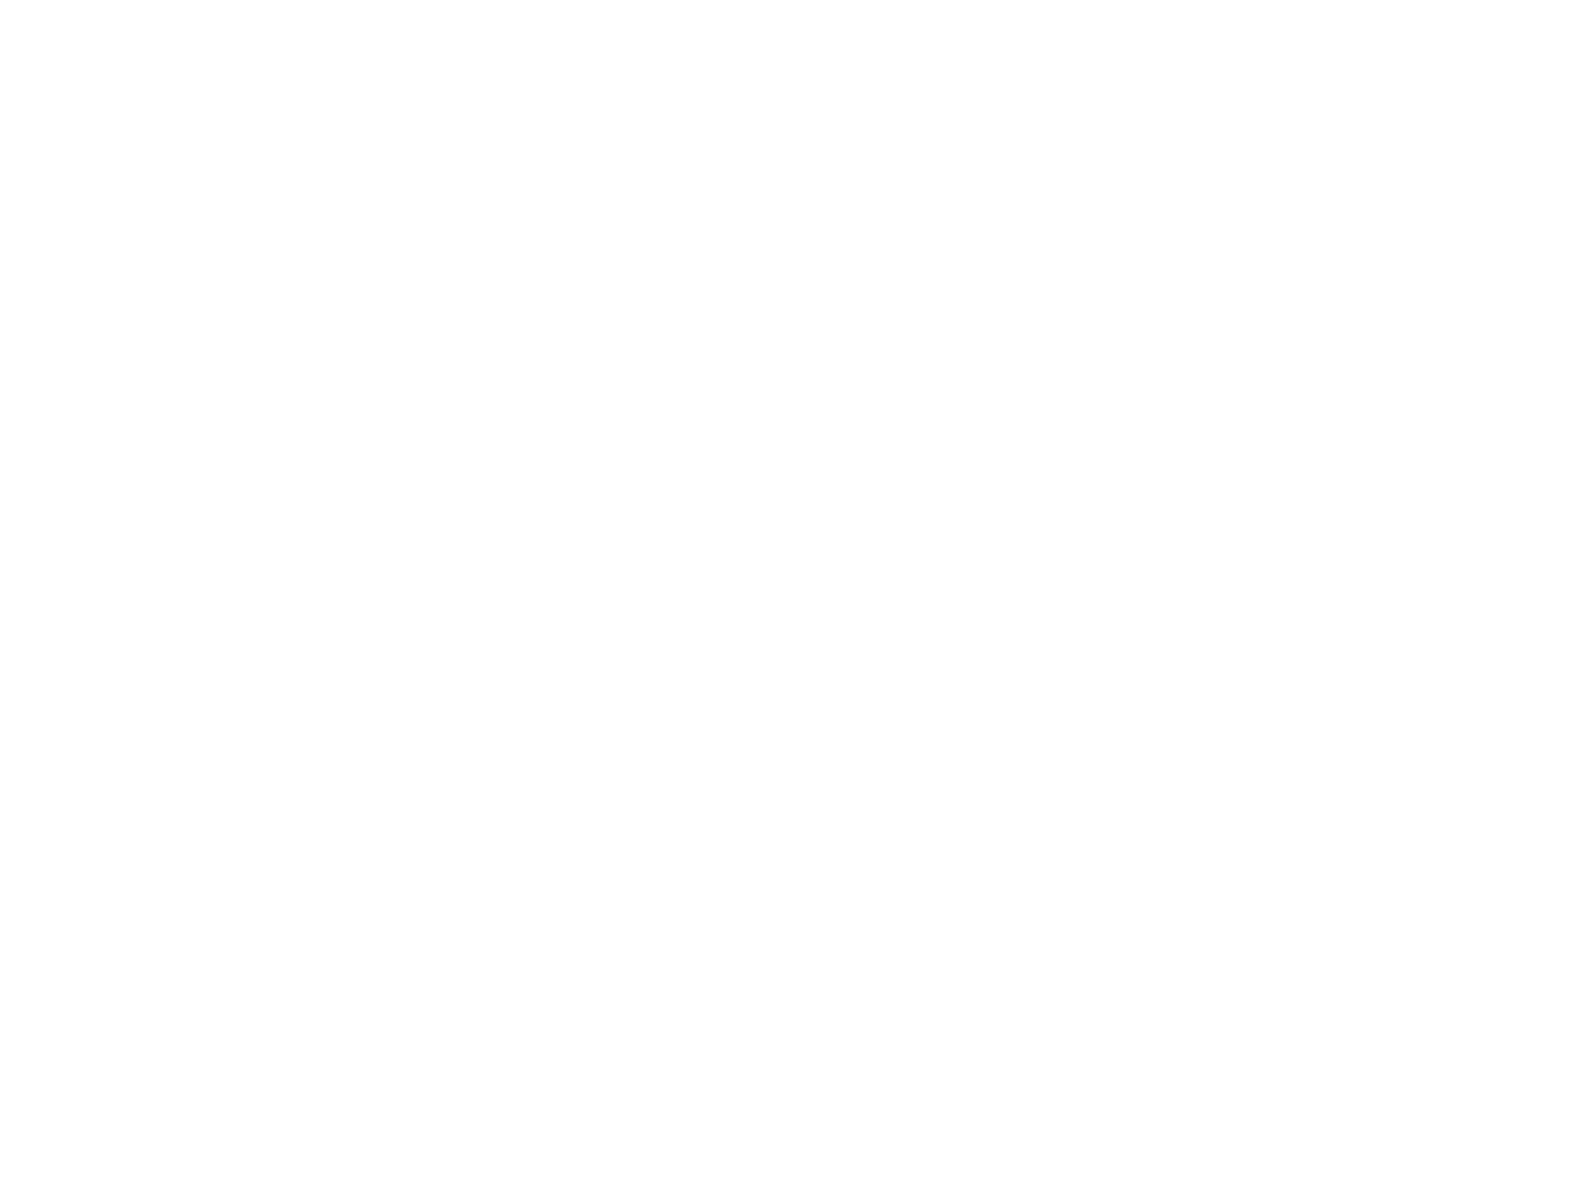 Global Unichip Corp. logo pour fonds sombres (PNG transparent)